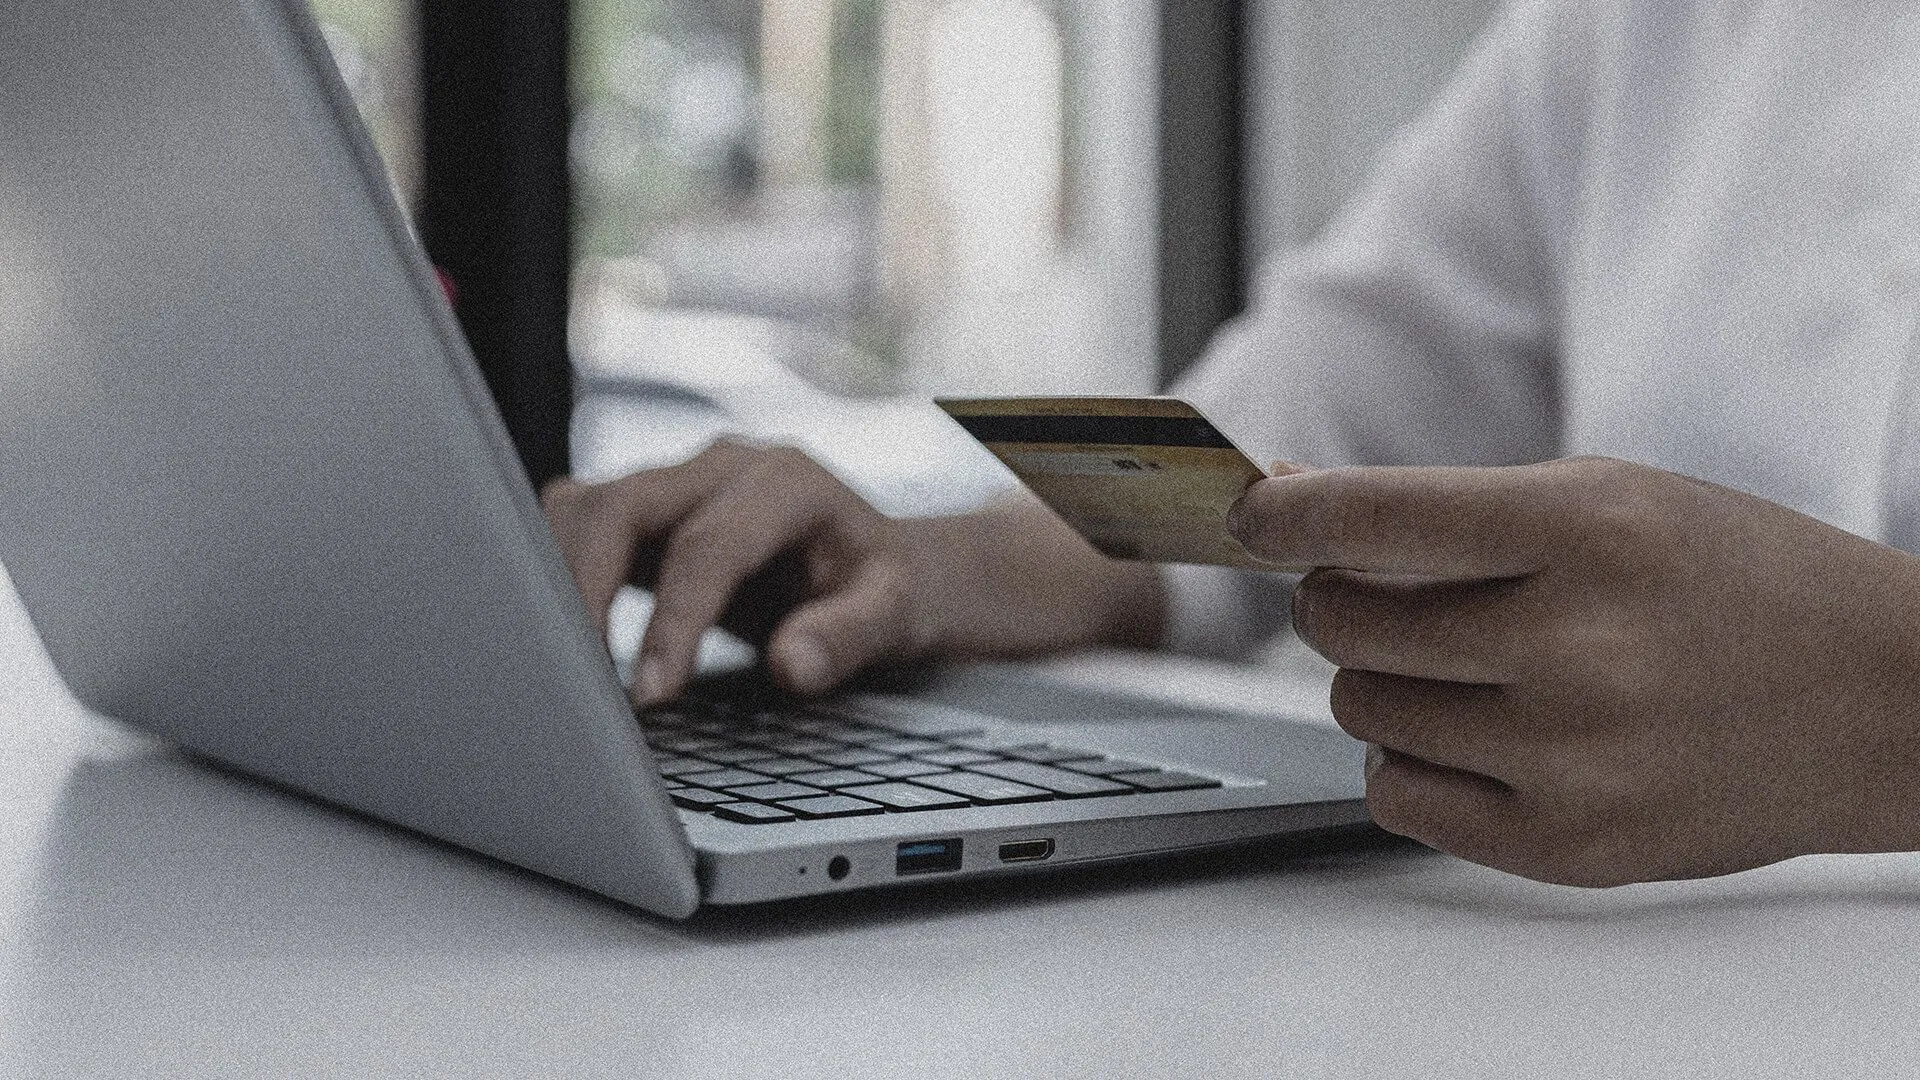 Les futures® informations sur la fraude à la carte enregistrées fournissent à Swedbank la visibilité dont elle a besoin pour prévenir la fraude à la carte de paiement